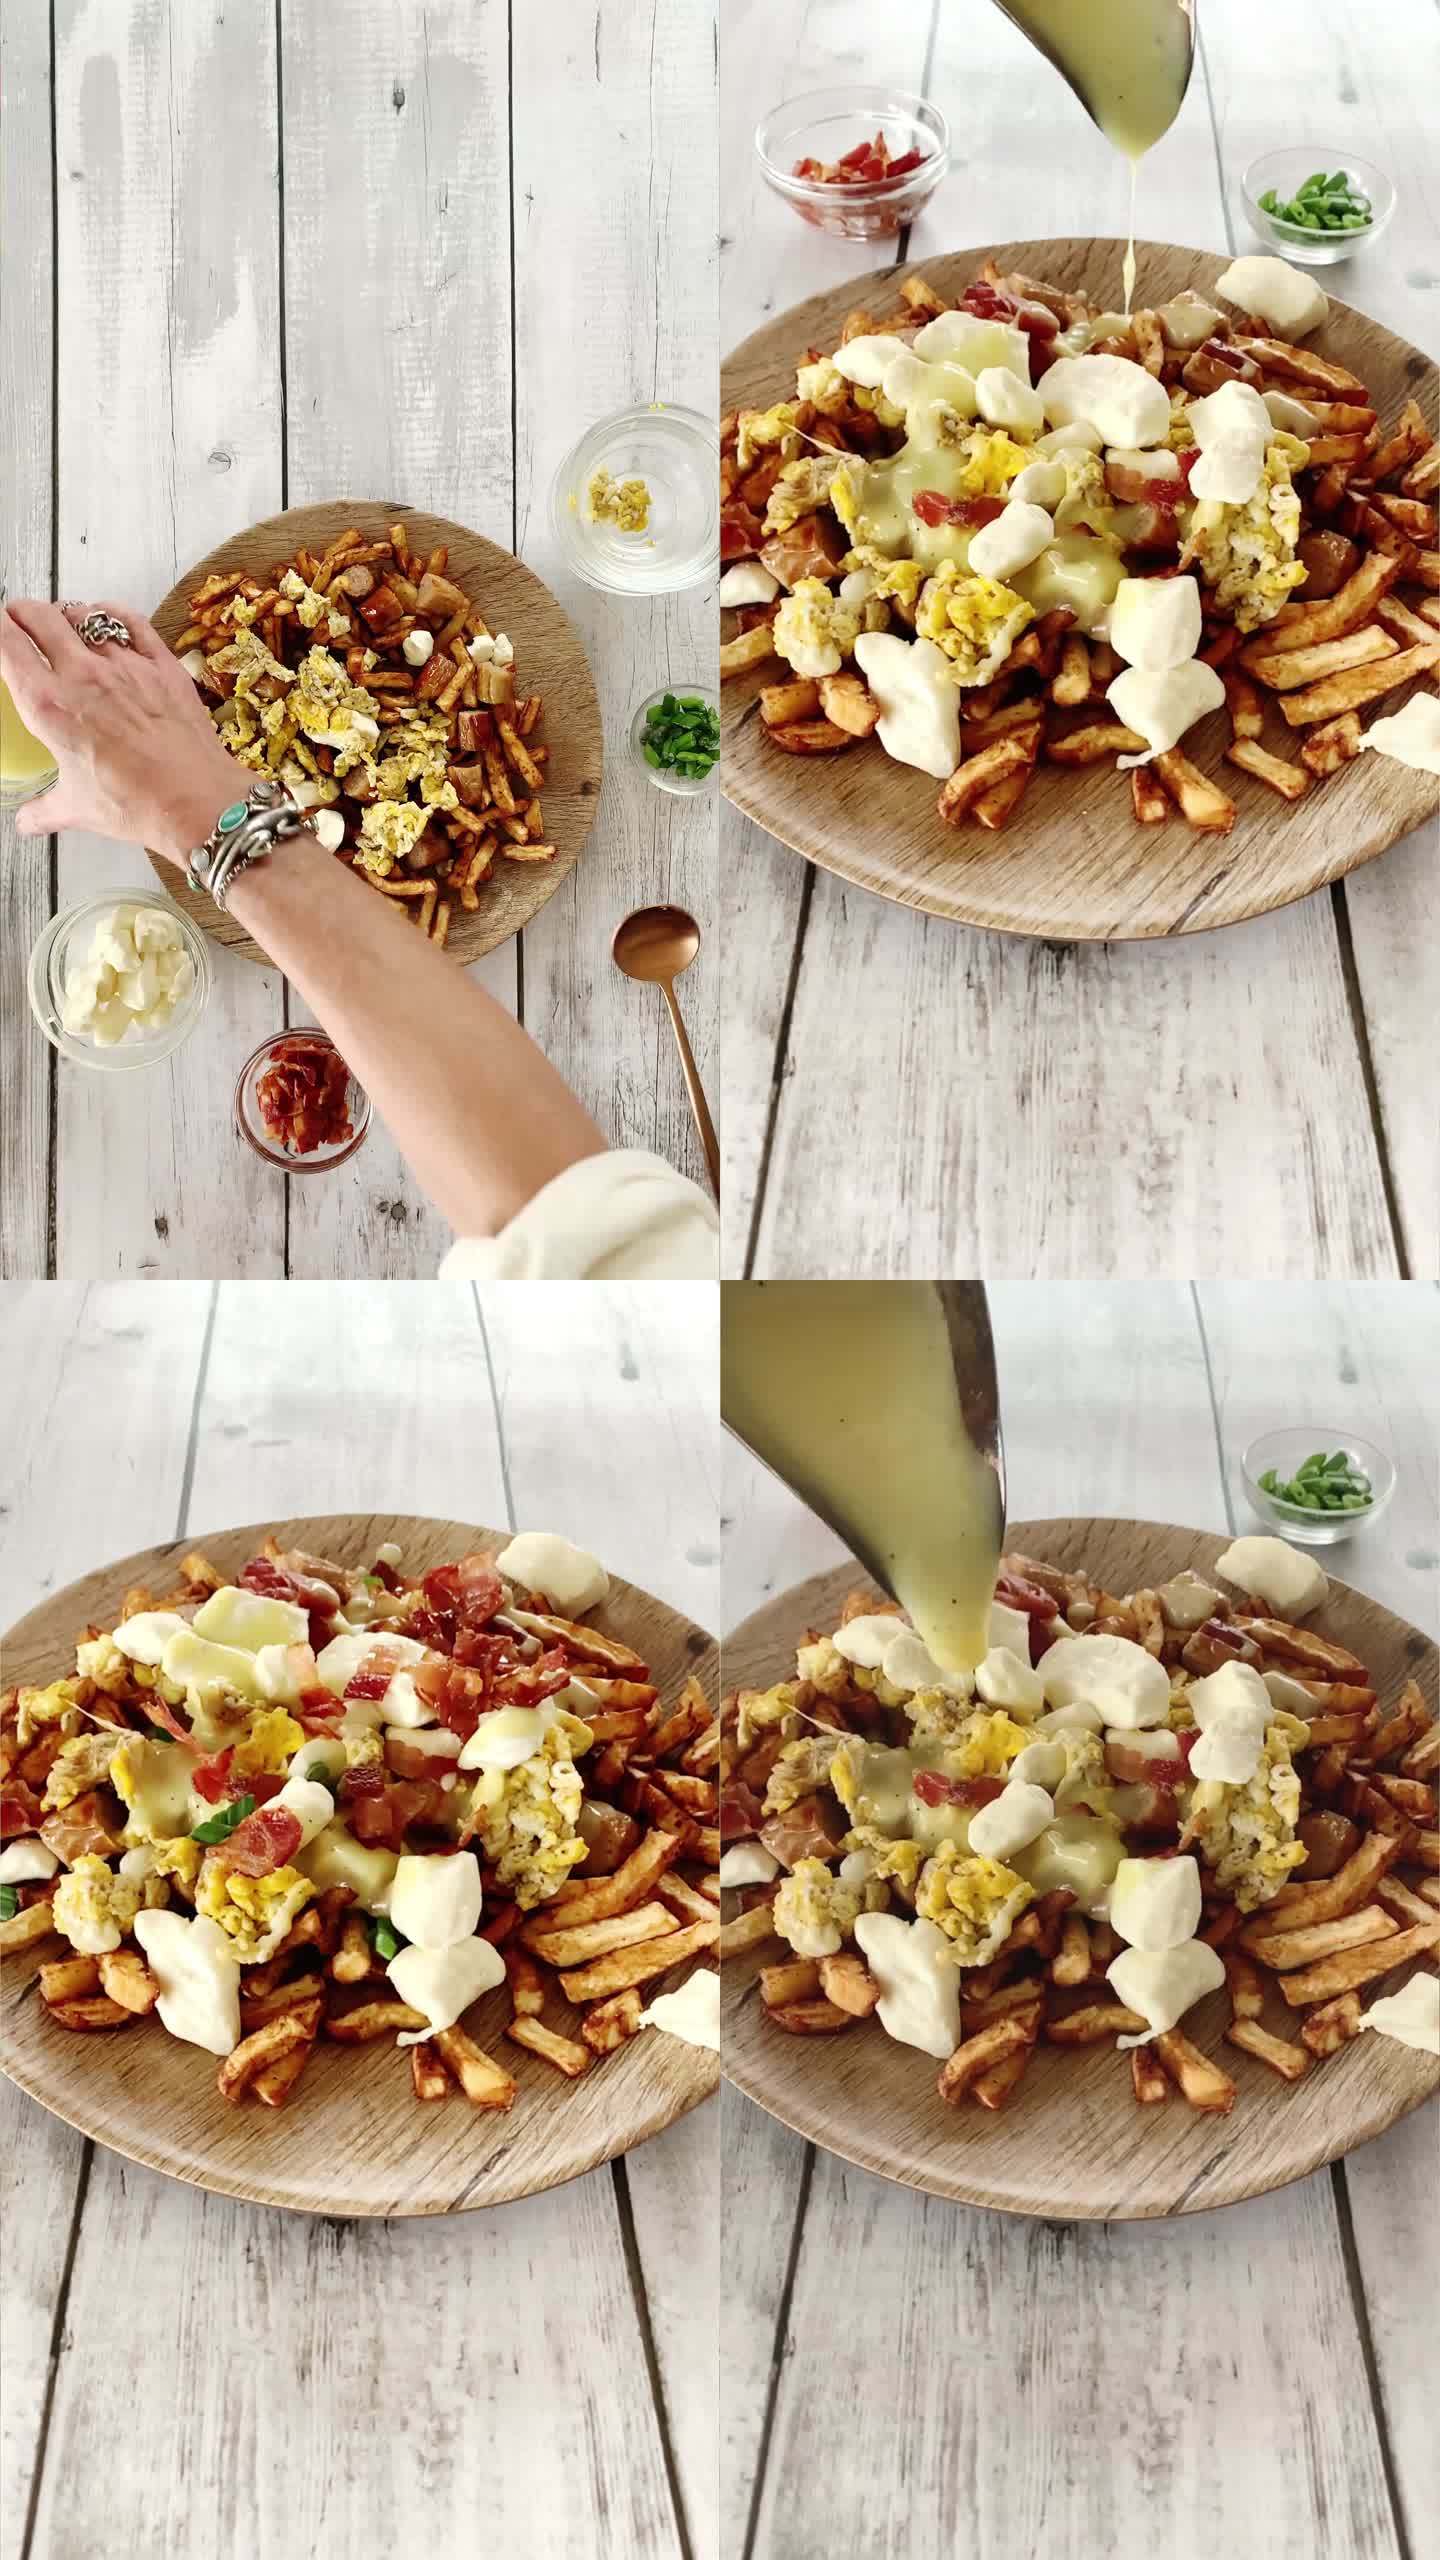 社交媒体的垂直食品准备博客蒙太奇：炸薯条、土豆条